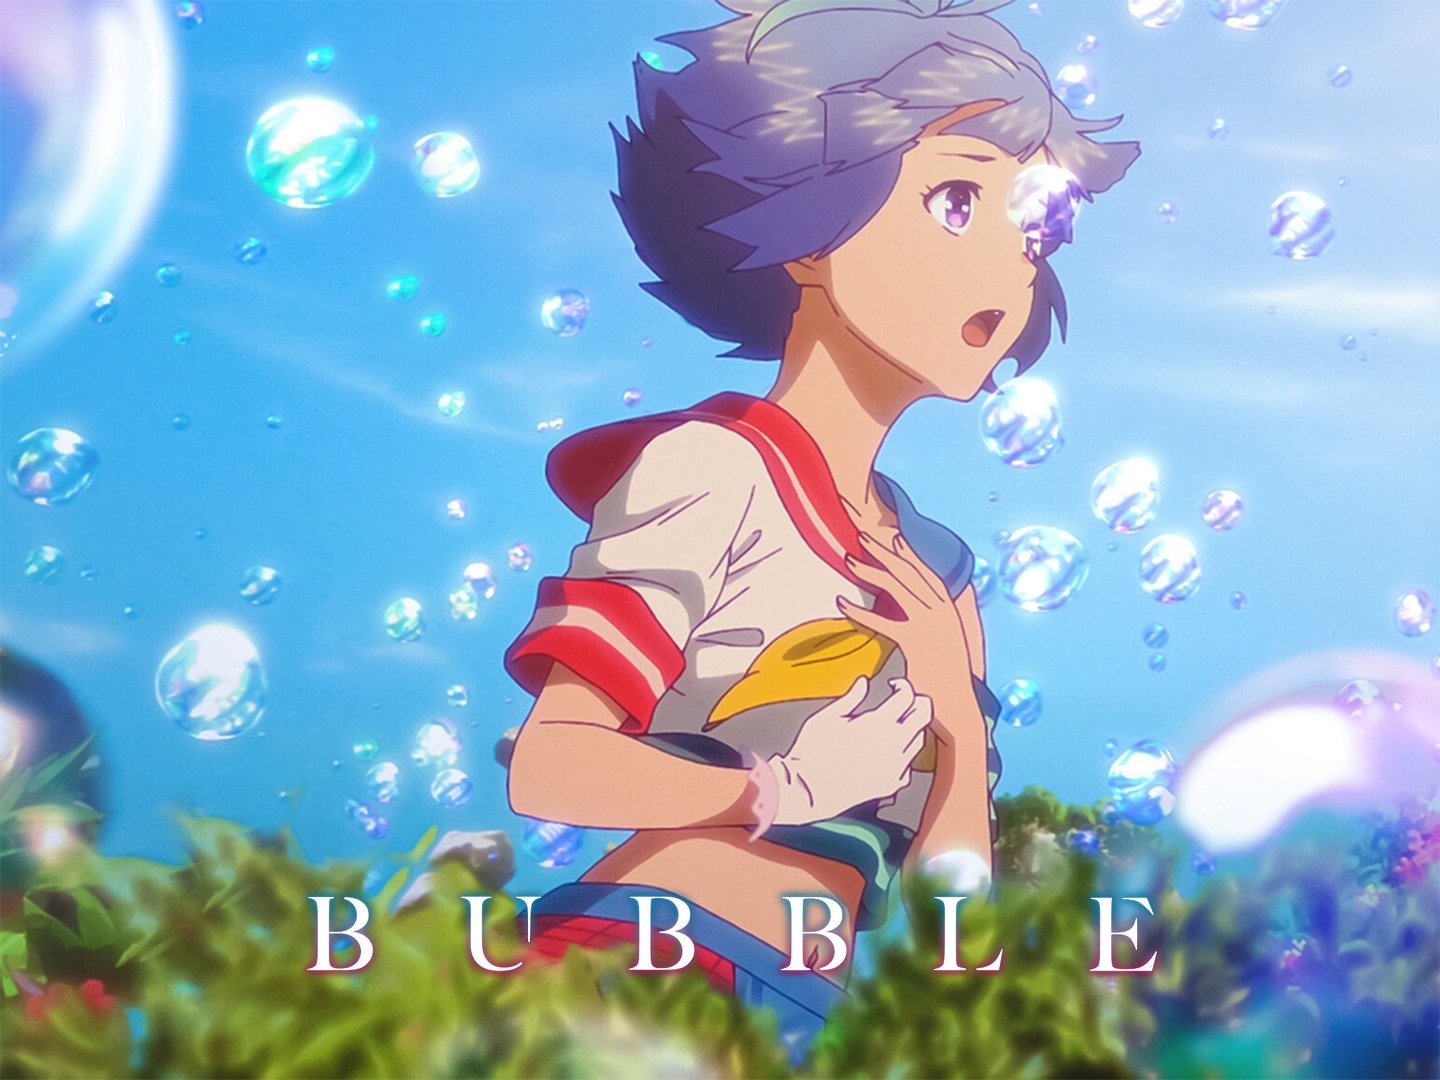 Uta x Hibiki | Bubble | Netflix Anime - YouTube